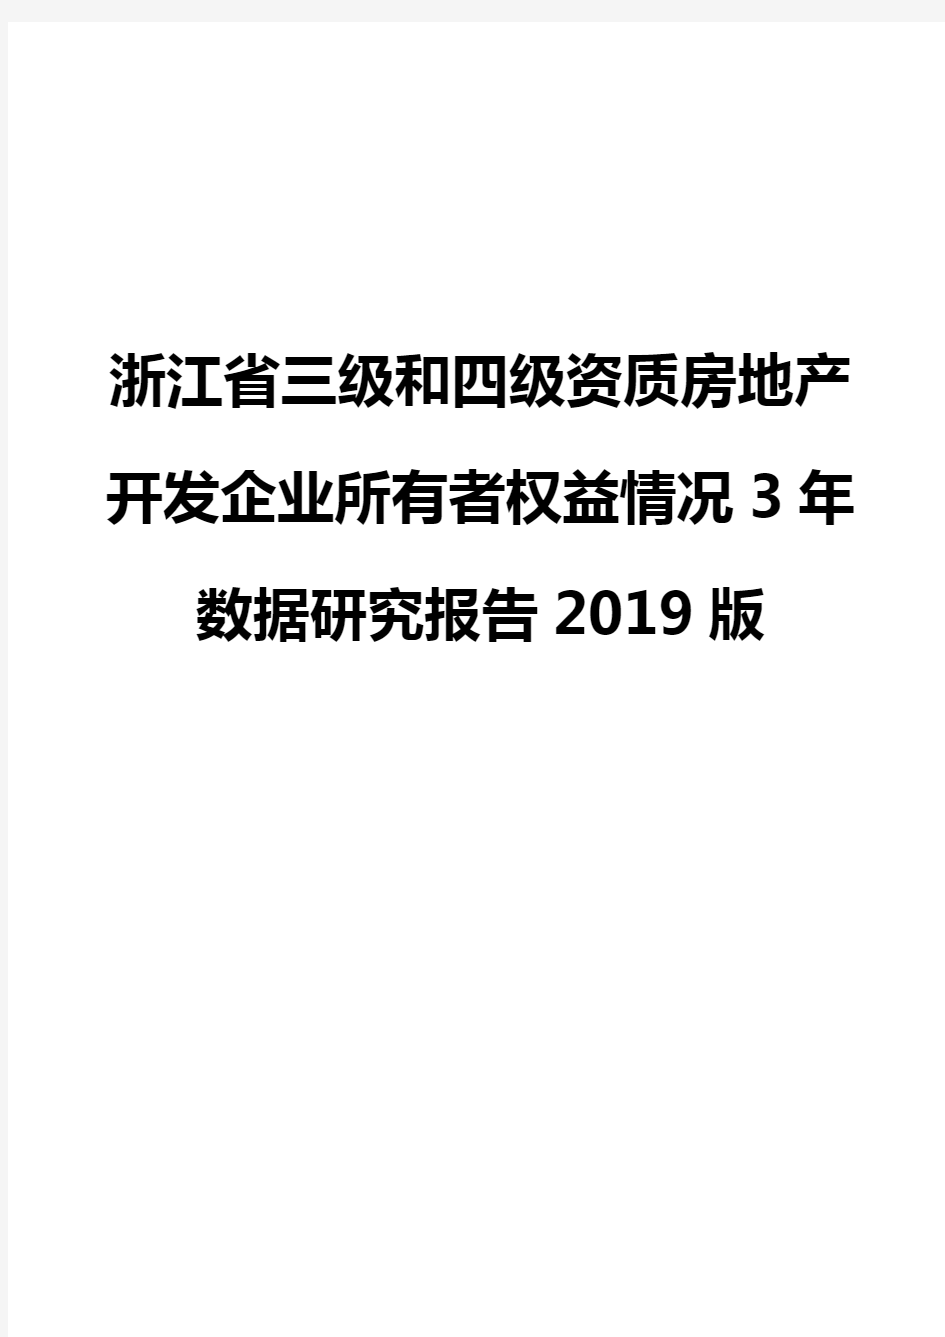 浙江省三级和四级资质房地产开发企业所有者权益情况3年数据研究报告2019版